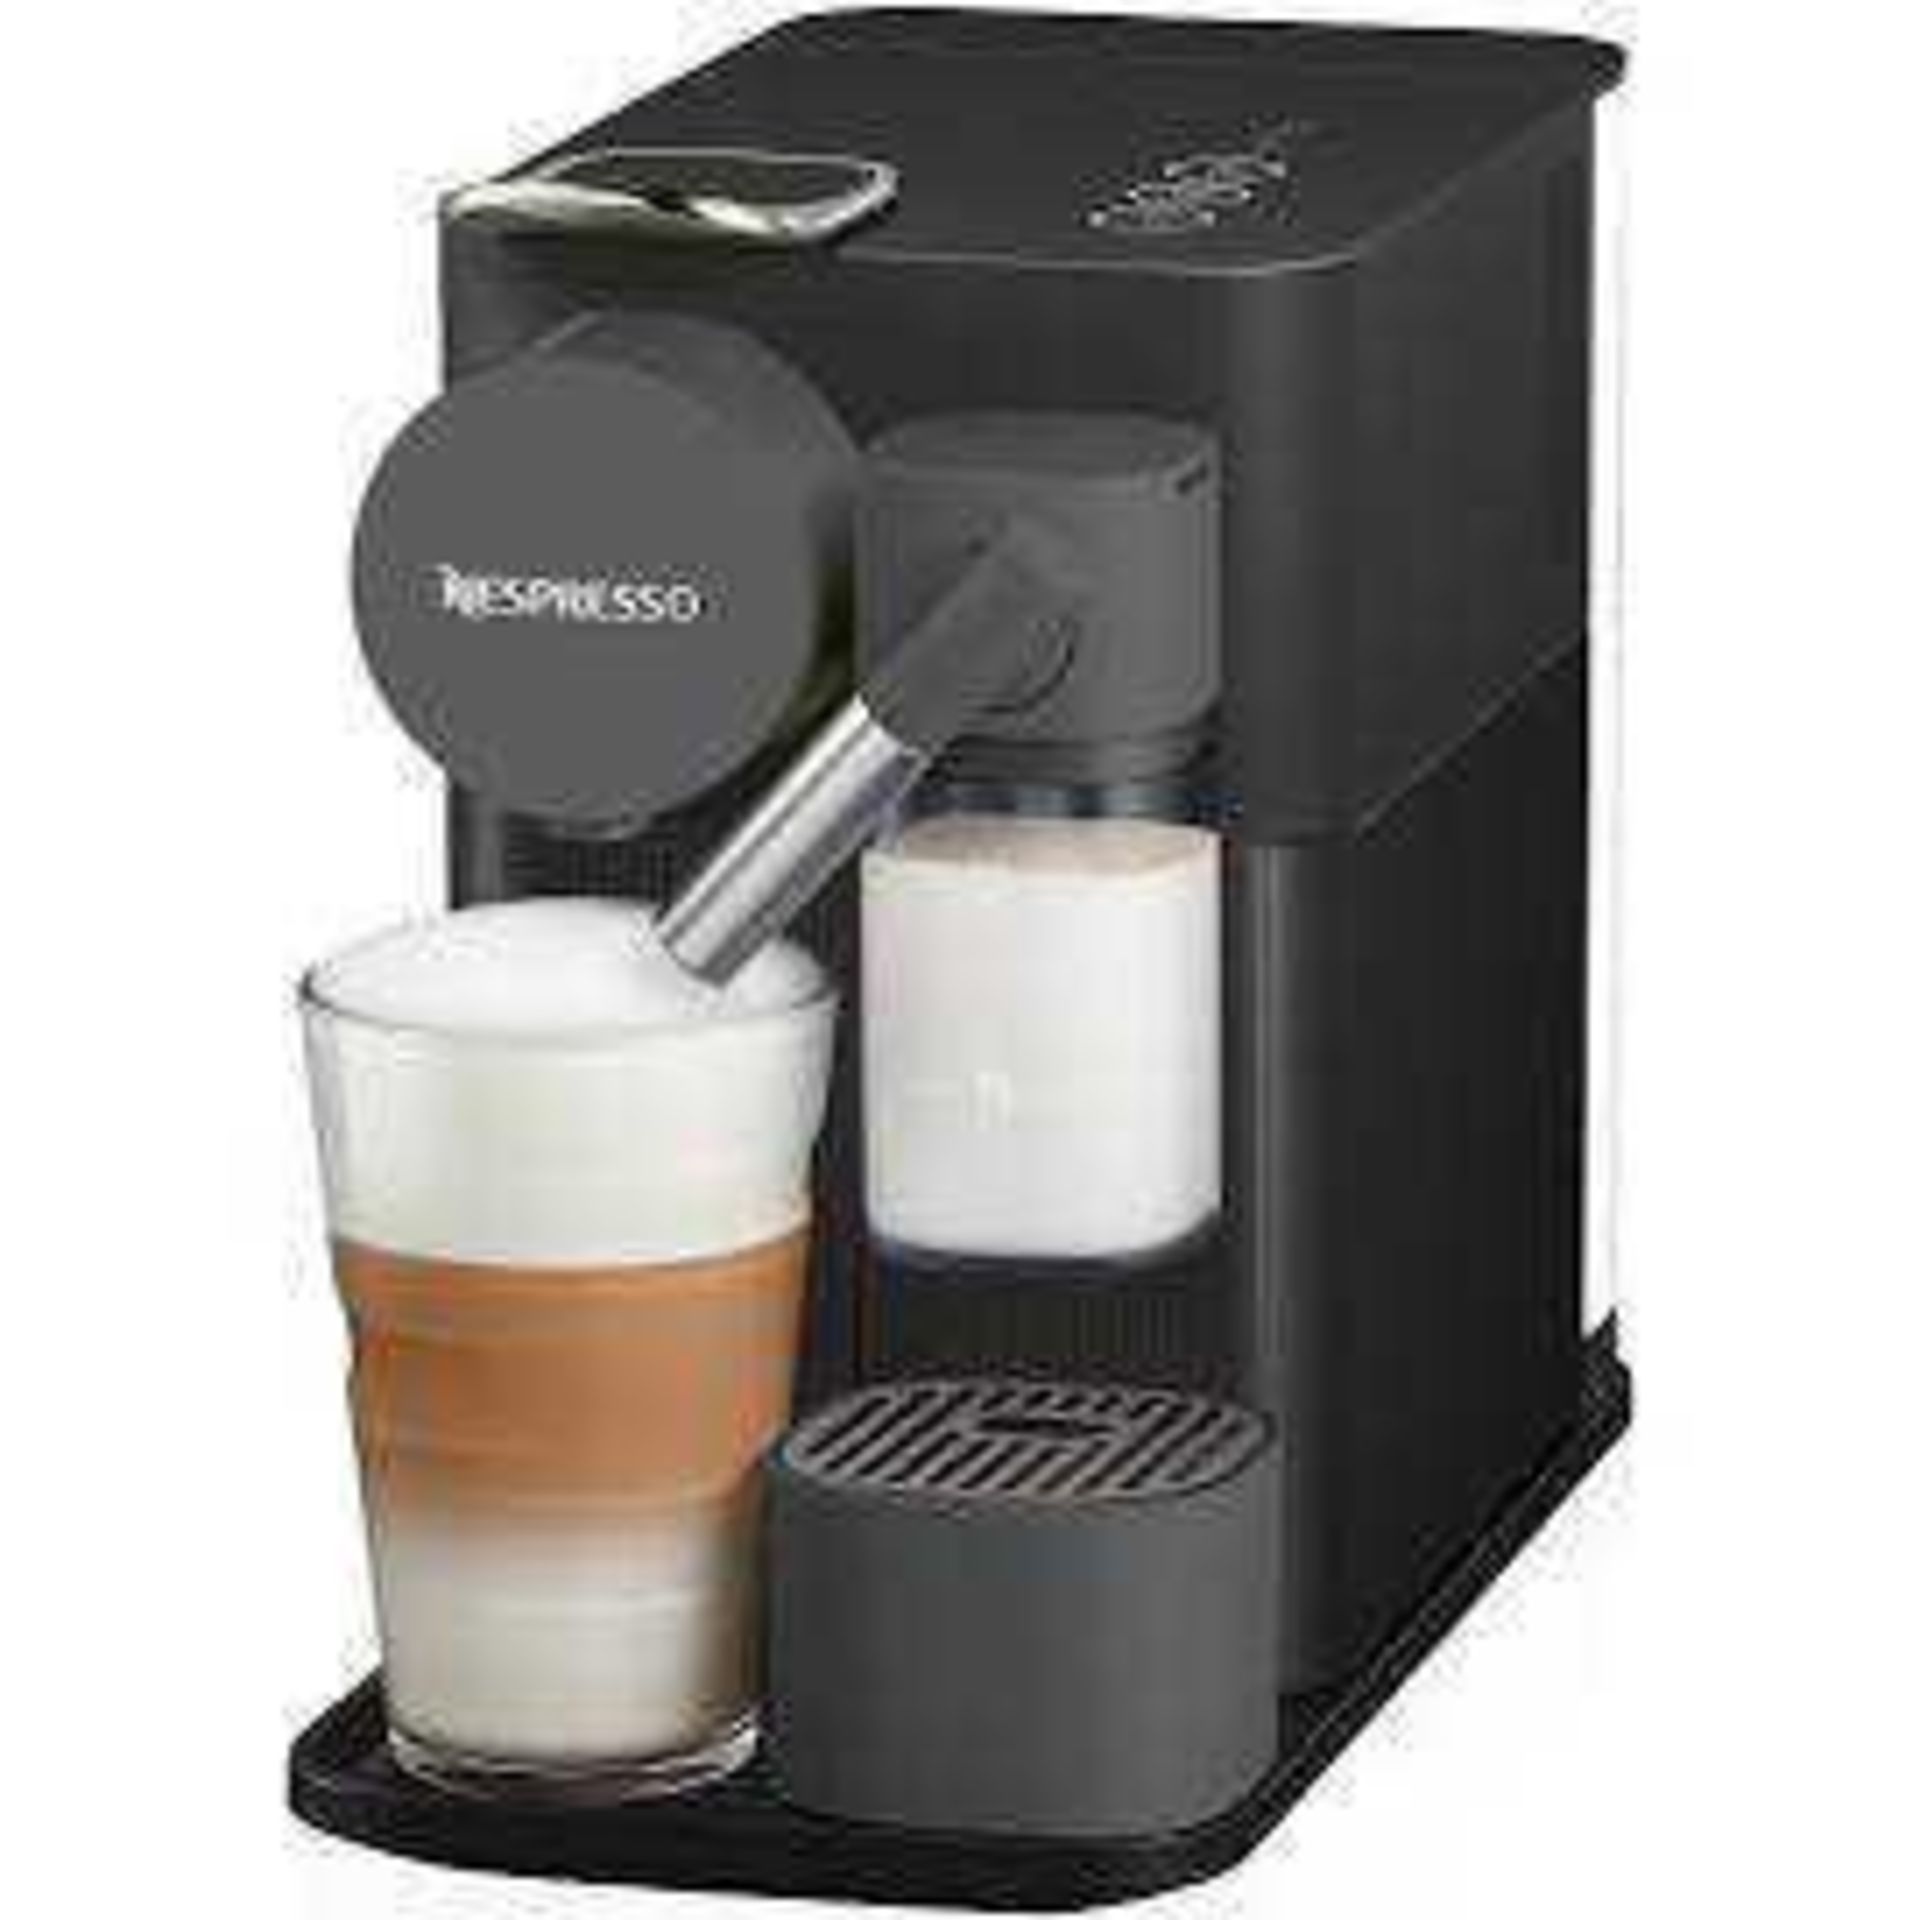 RRP £200 Boxed Nespresso Lattissima One Delonghi Coffee Machine In White Untested